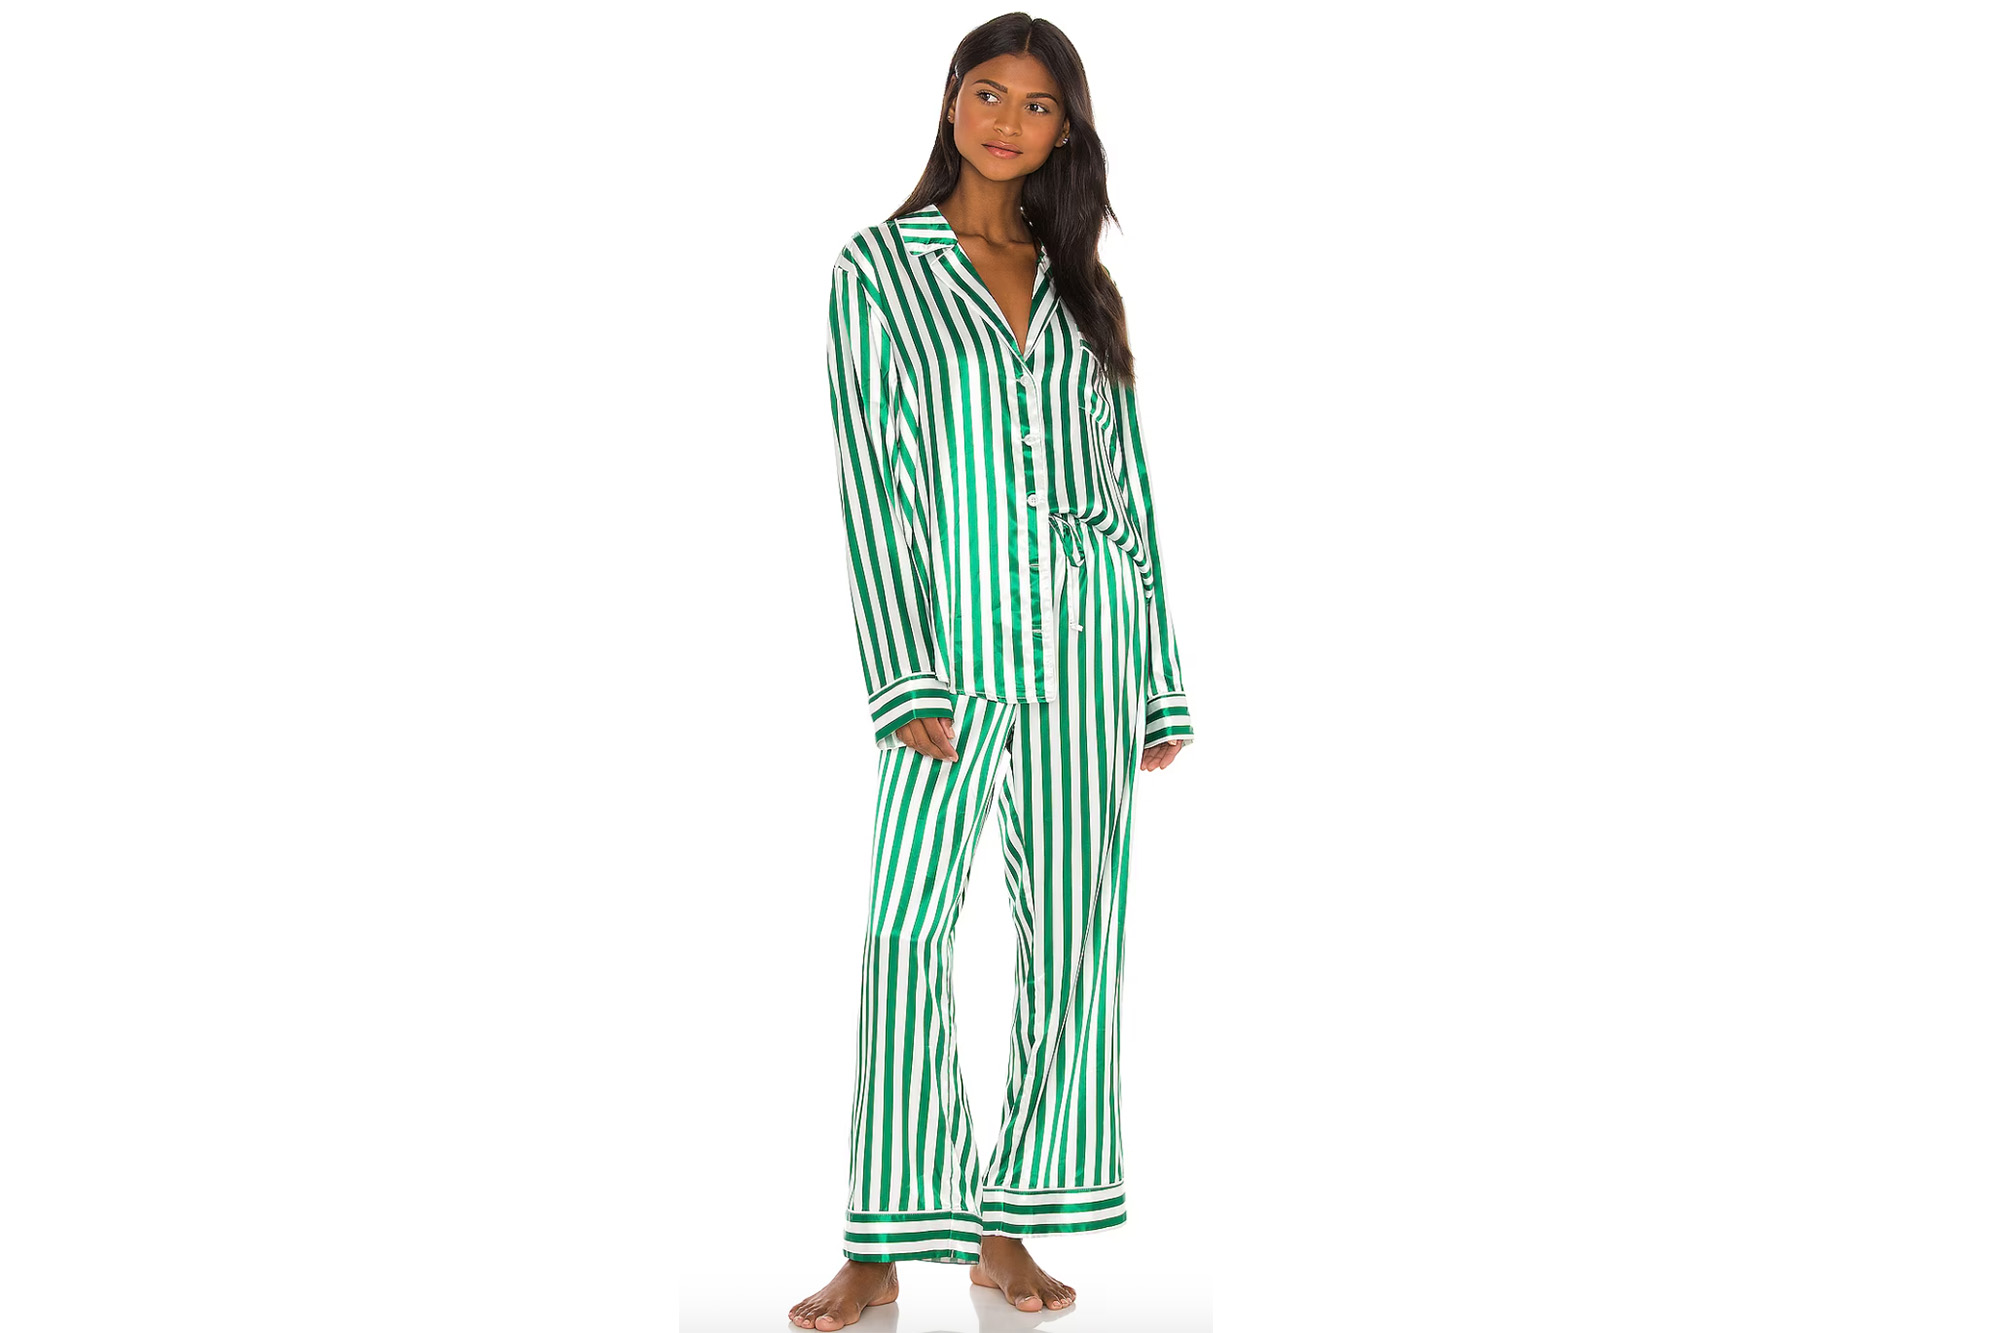 Ein Model in grün-weiß gestreiften Pyjamas